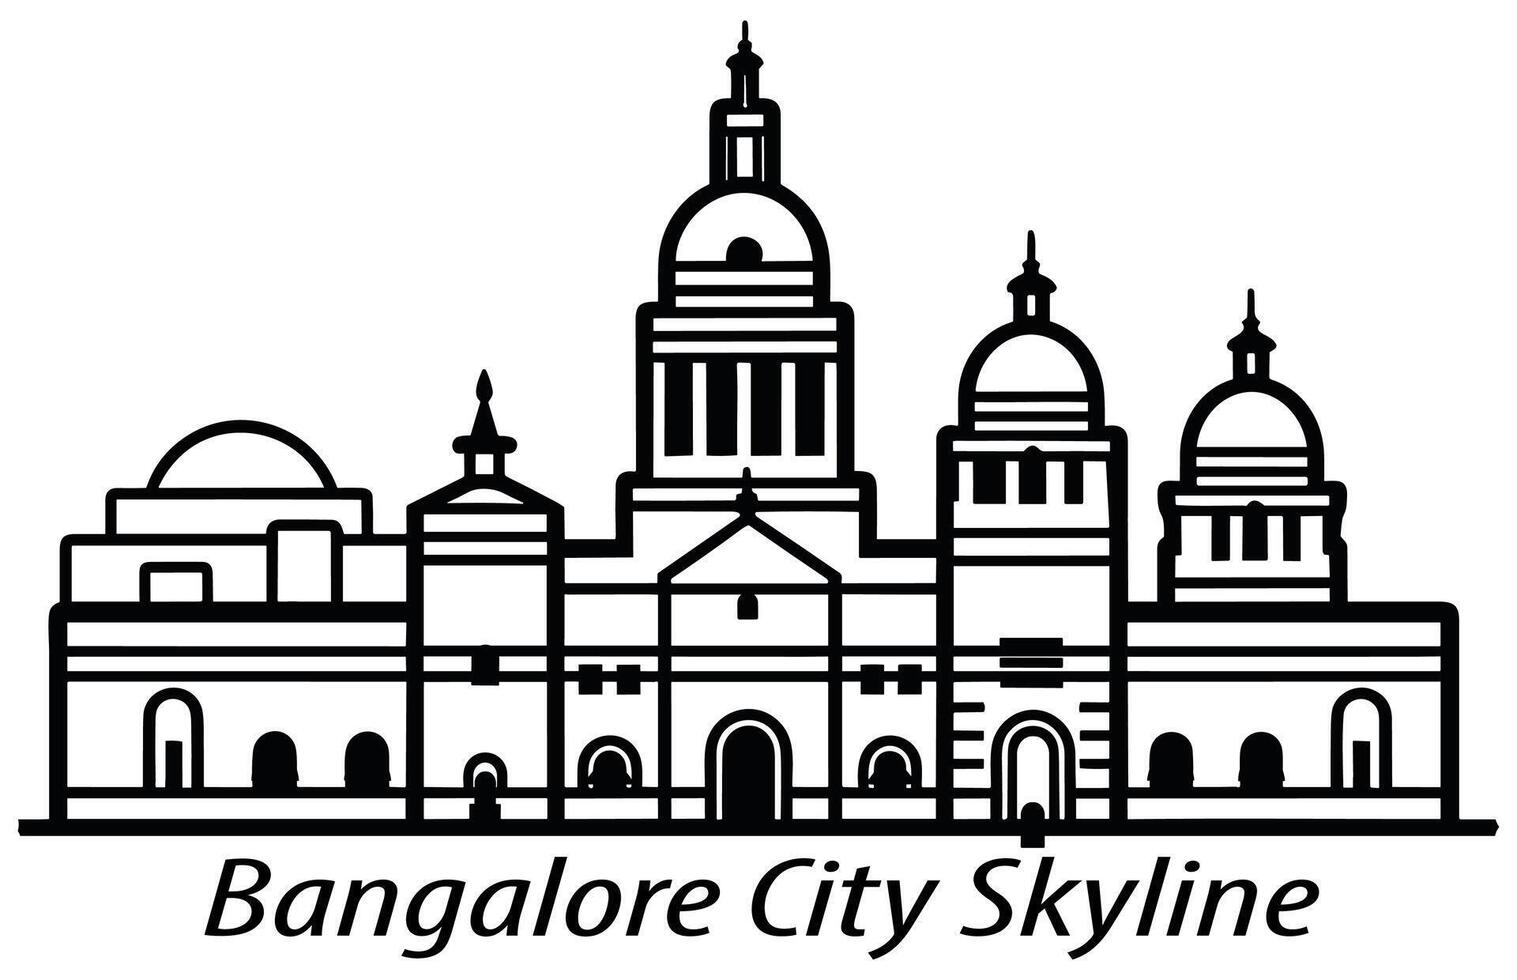 plano vetor silhueta do Bangalore cidade, Bangalore cidade Horizonte.